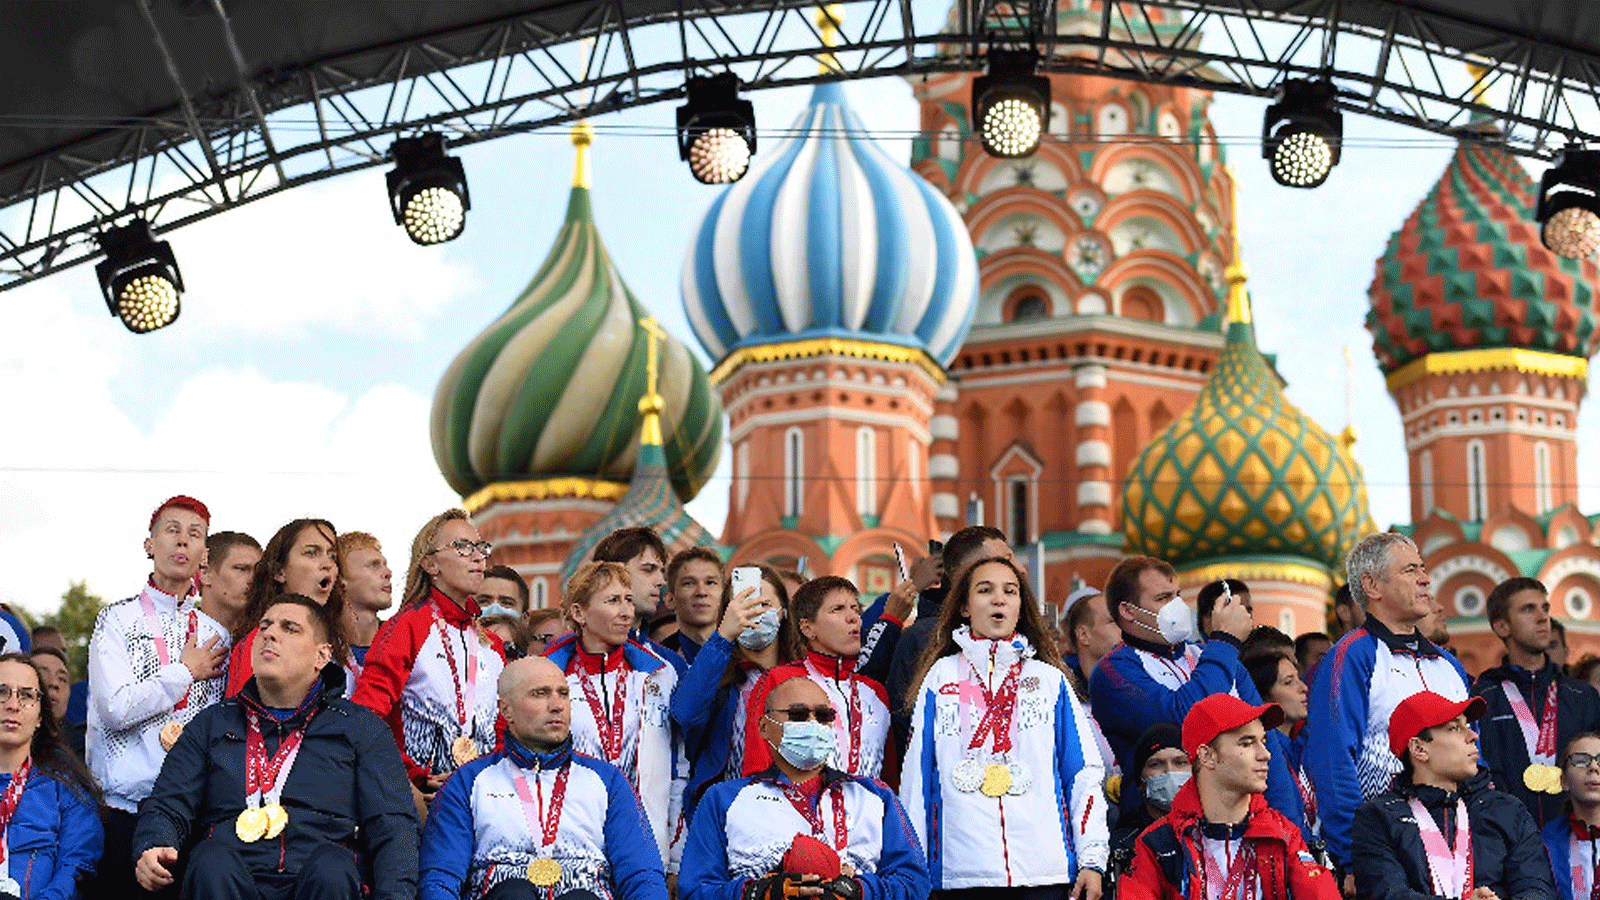 الرياضيون الروس والبيلاروس يشاركون في الألعاب البارالمبية الشتوية تحت علم محايد